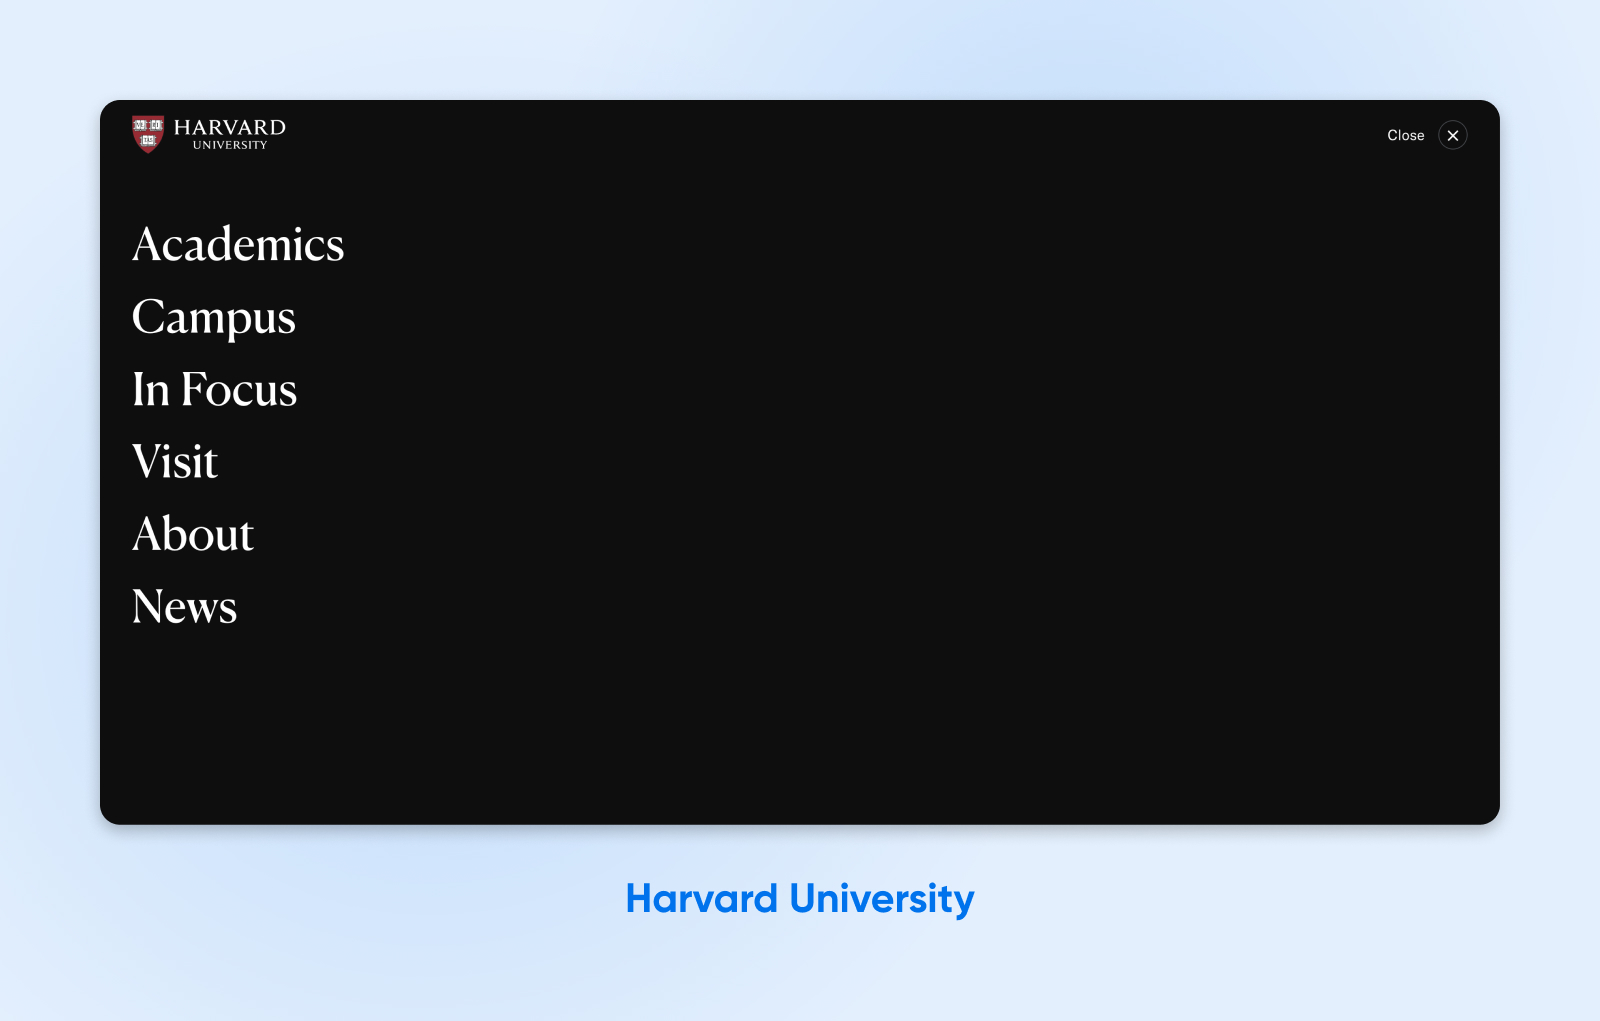 Menú de navegación principal de la Universidad de Harvard con pestañas Acerca de y Académicos en texto blanco grande sobre un fondo negro.